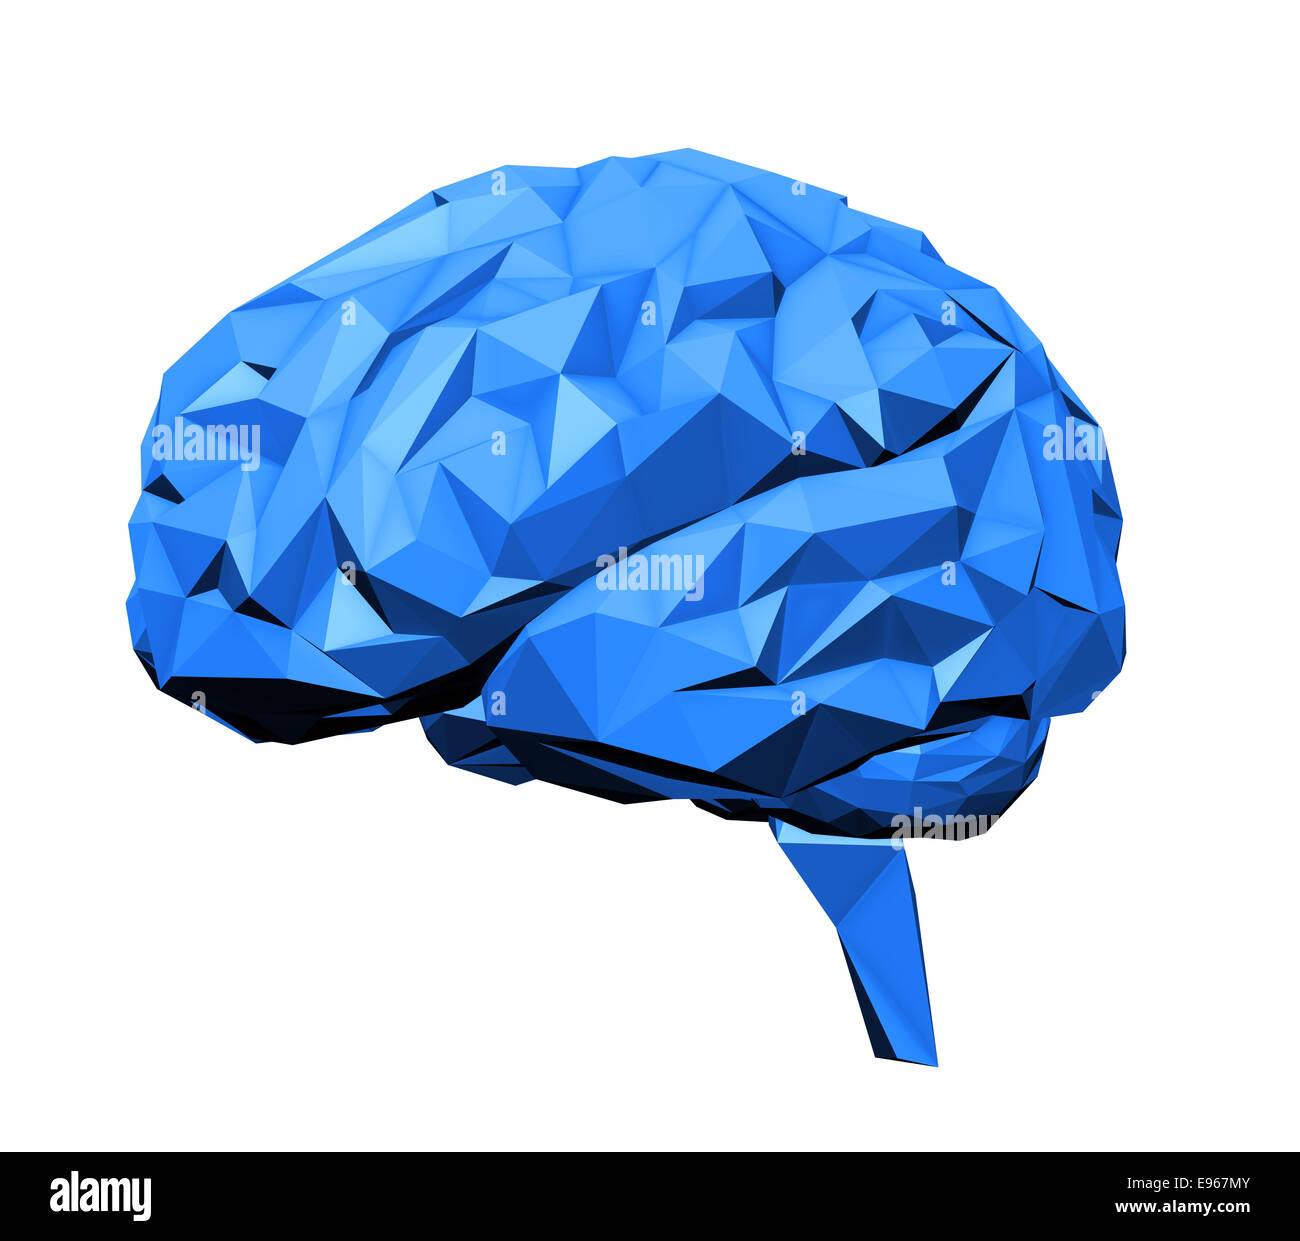 Stilisierte menschliche Gehirn mit einem 3D Polygon-look Stockfoto